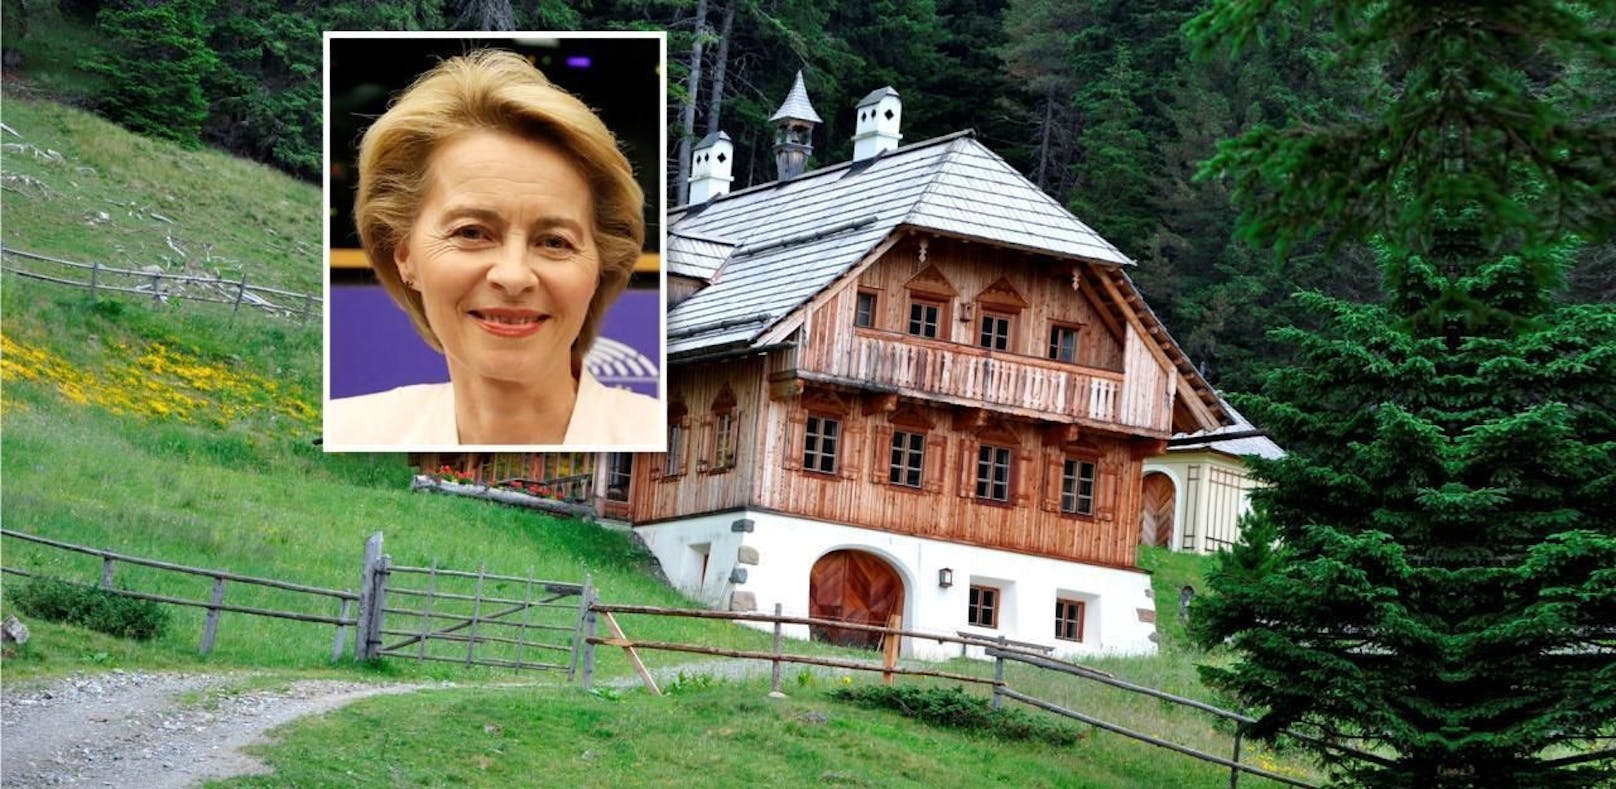 Die deutsche Ministerin Ursula Von der Leyen hat eine luxuriöse Almhütte in der Steiermark.